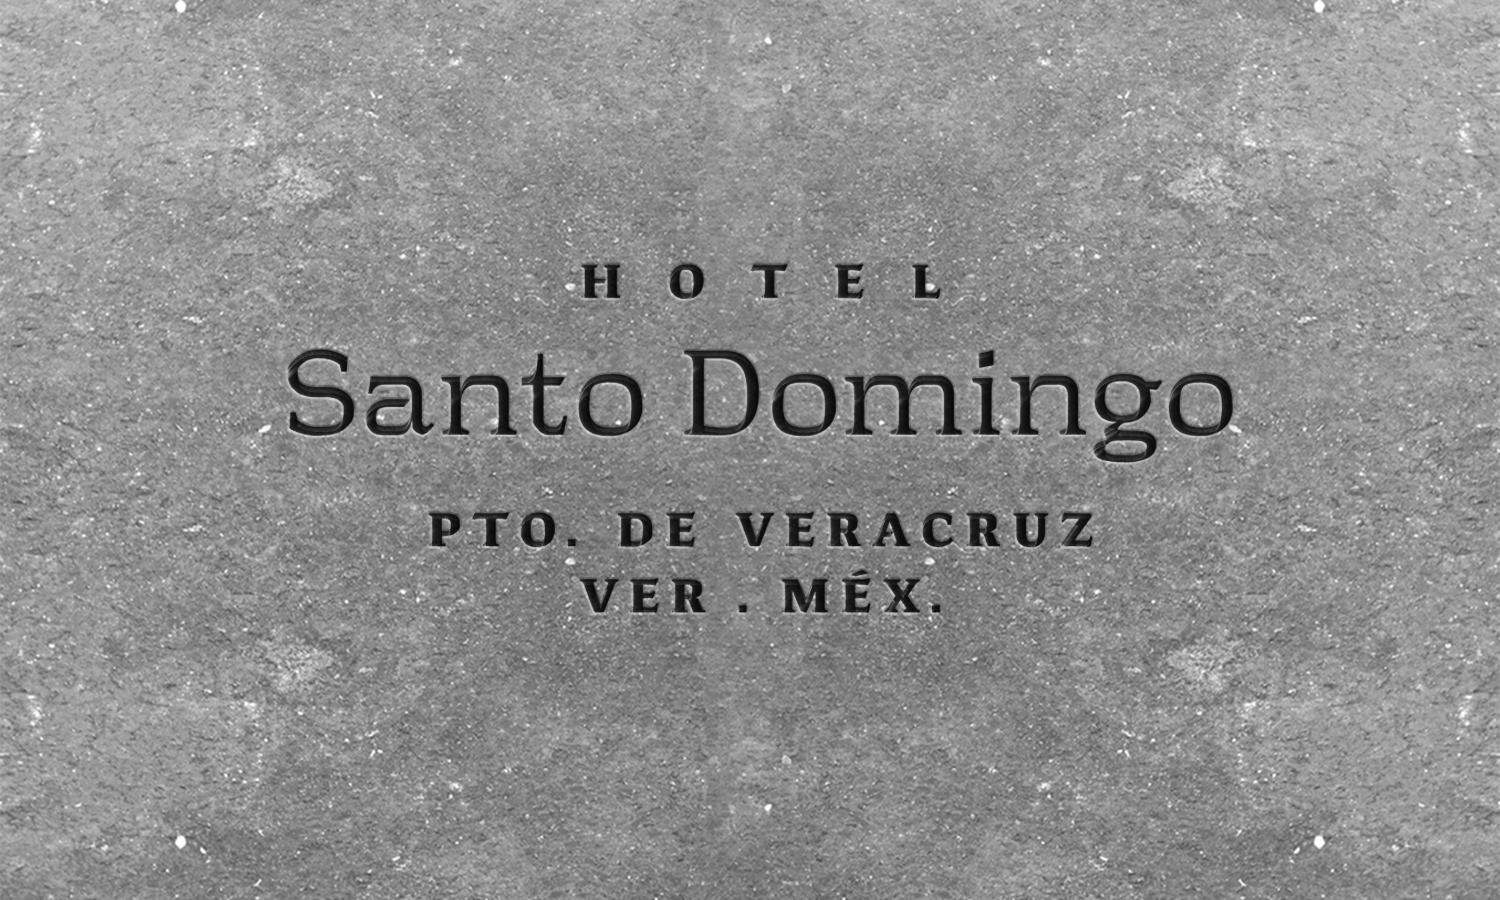 Santo Domingo rebranded